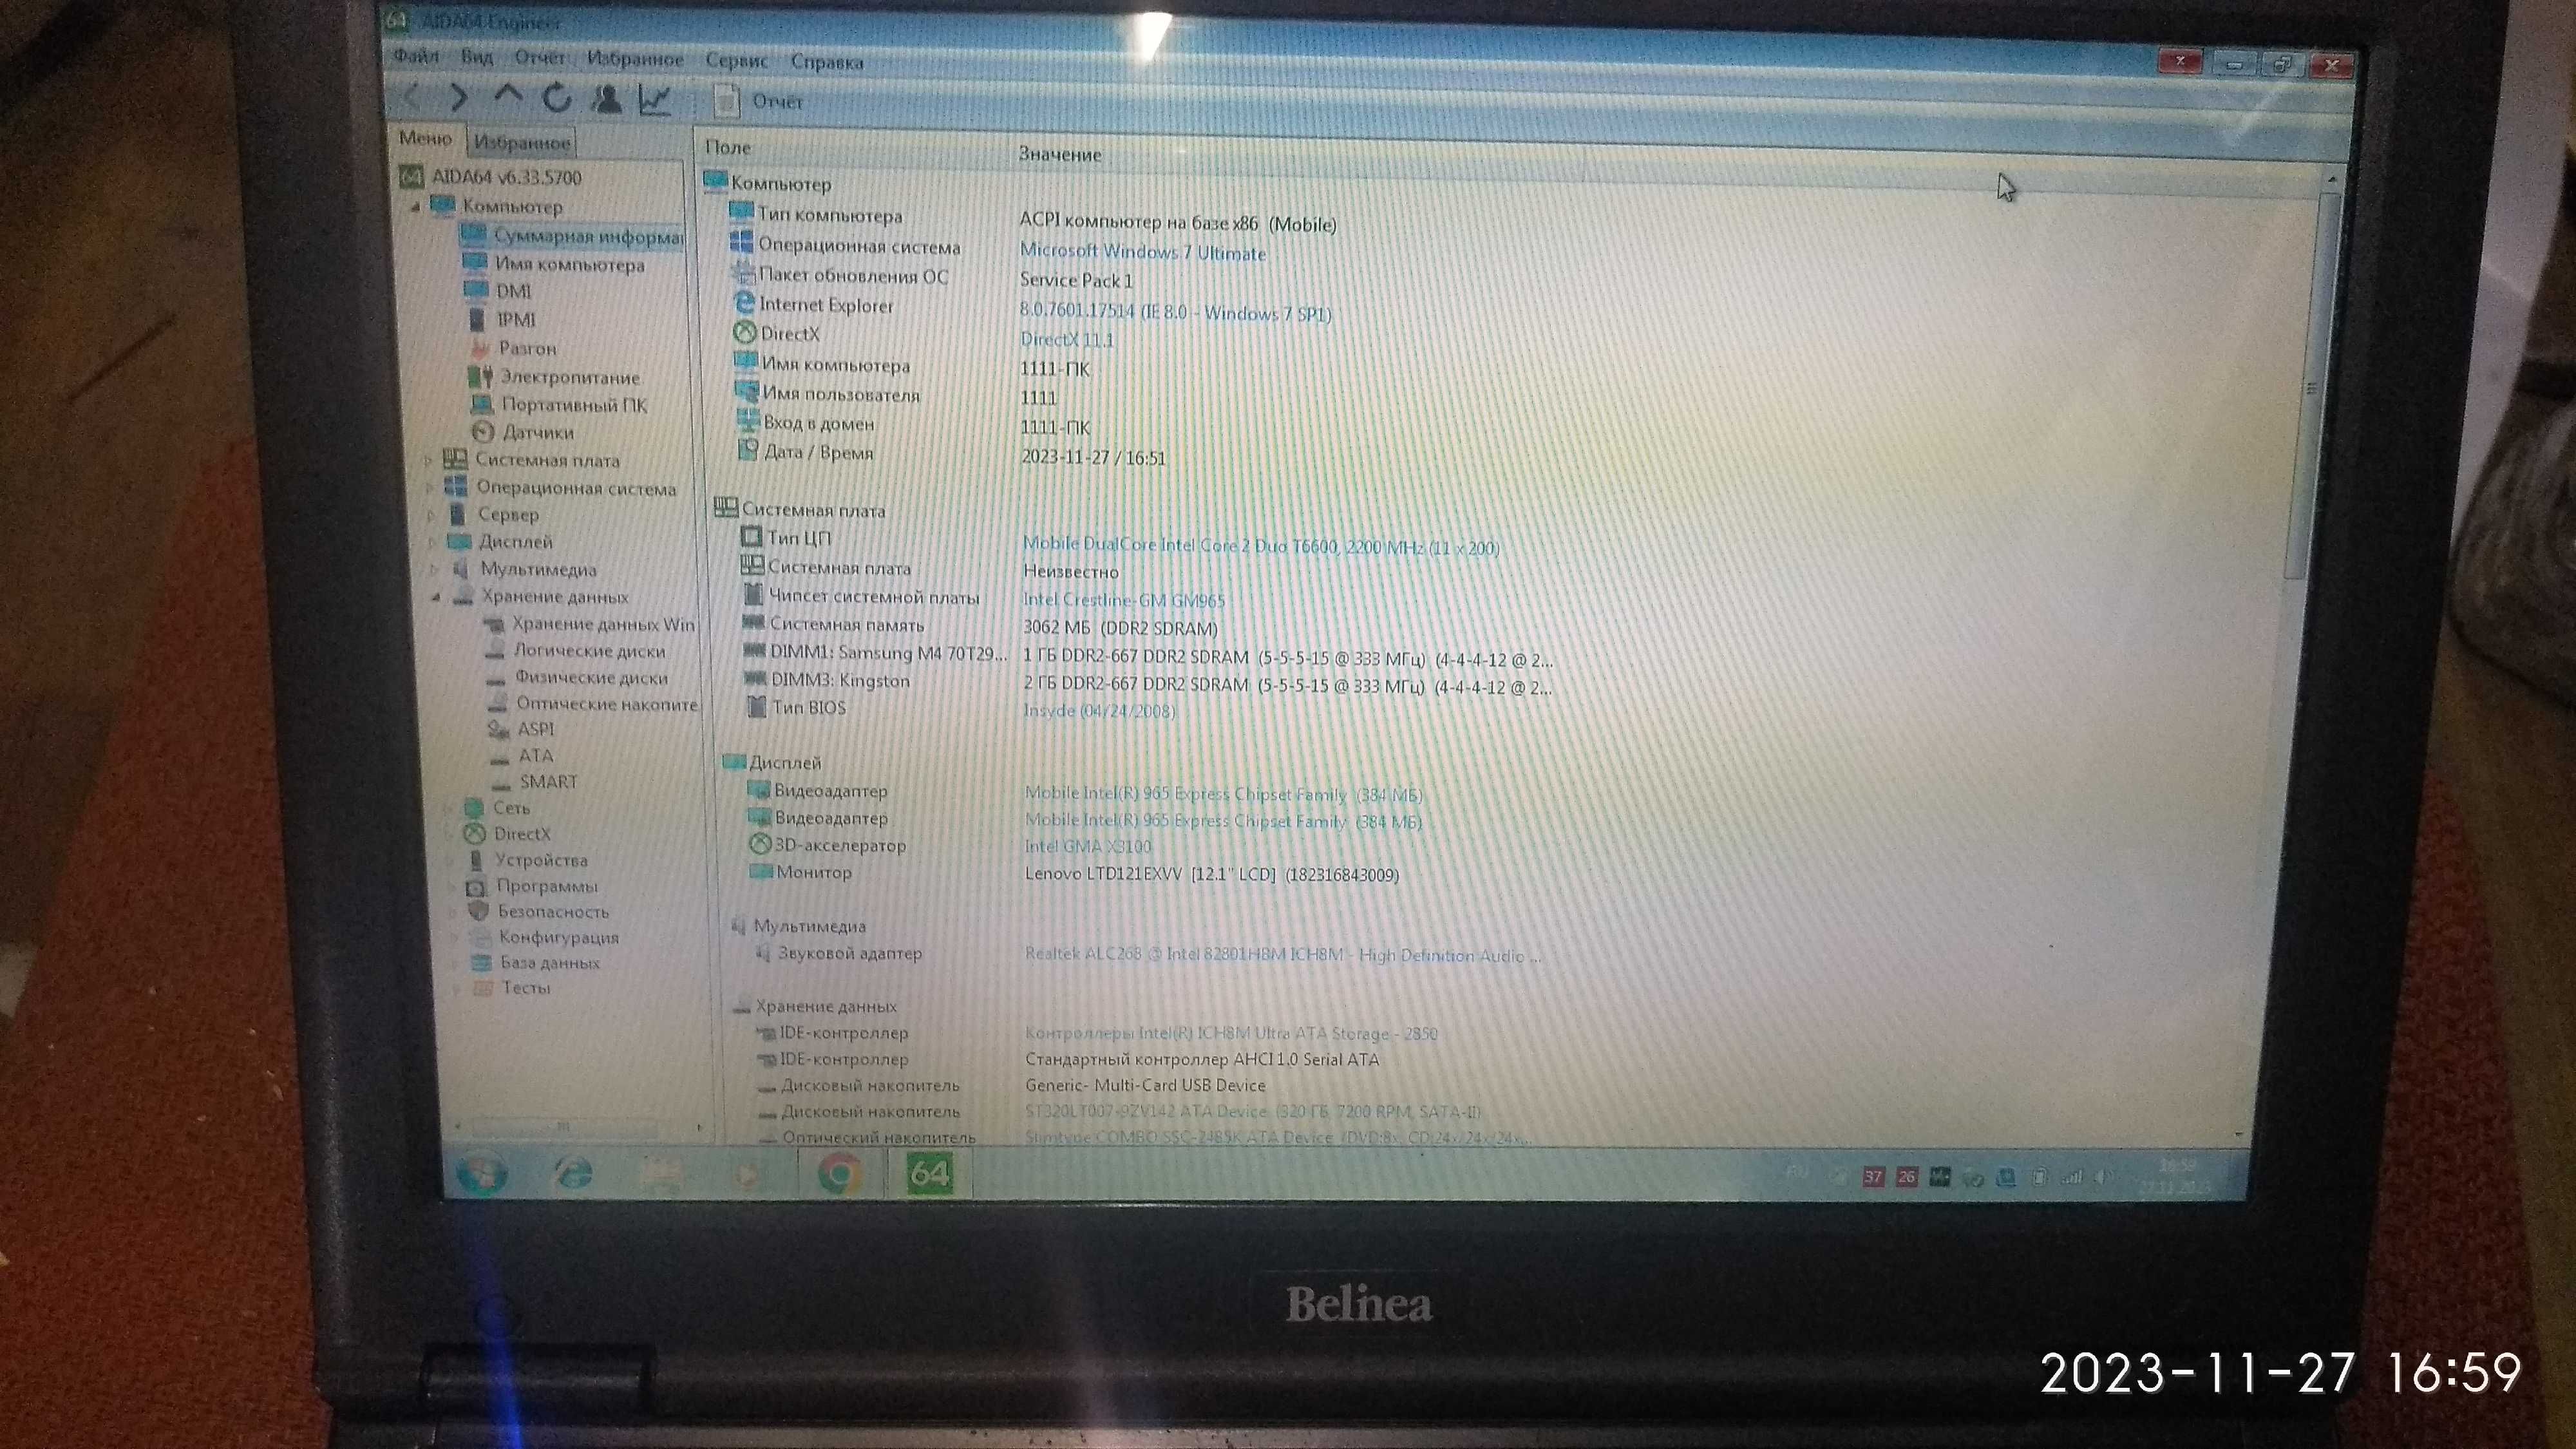 Ноутбук Belinea JFT00 он же Dell Vostro 1200